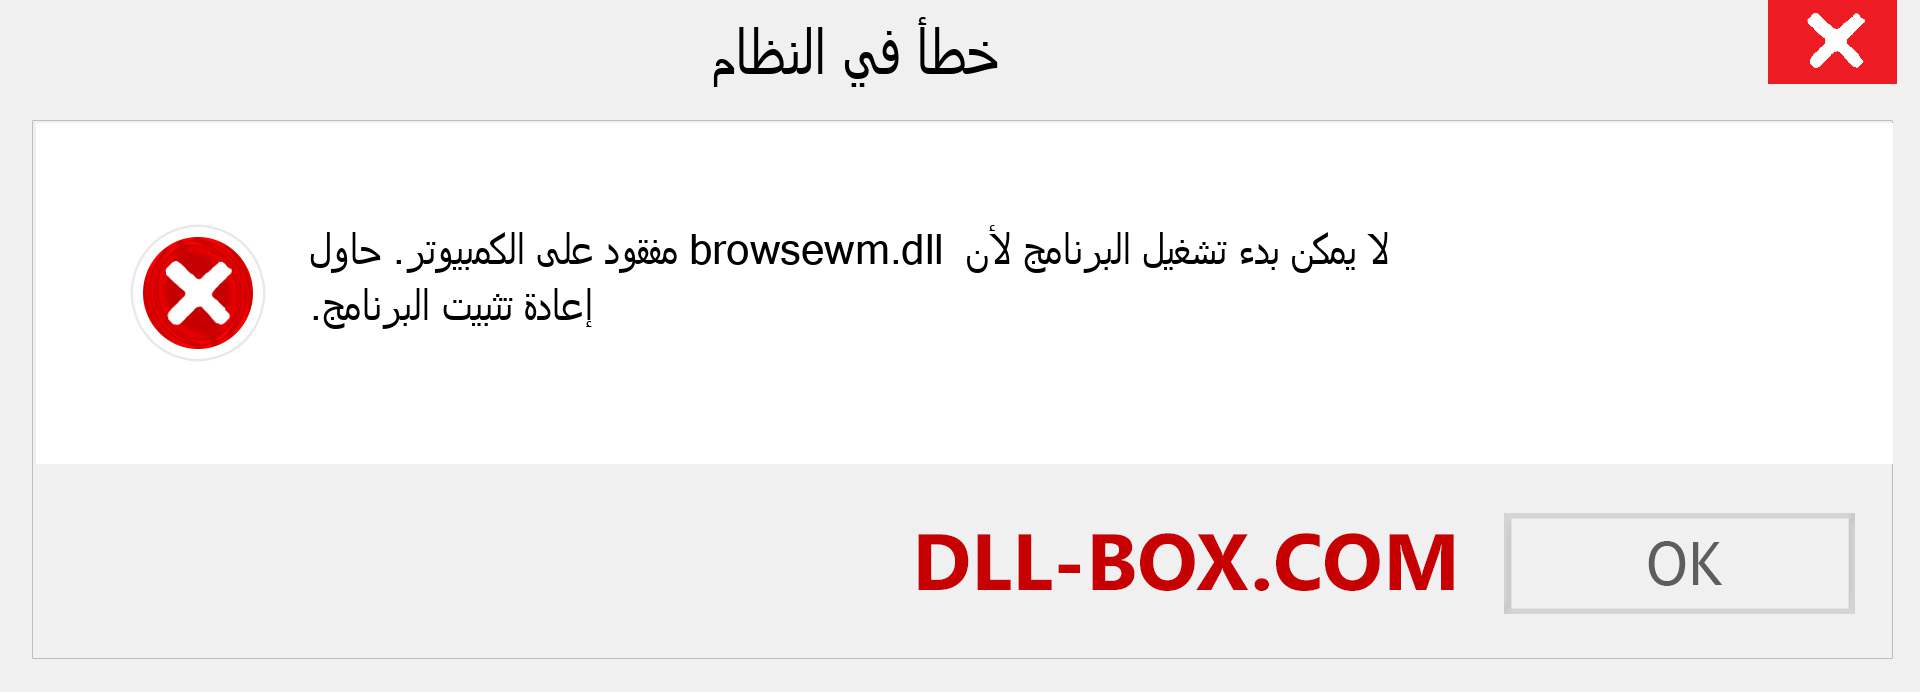 ملف browsewm.dll مفقود ؟. التنزيل لنظام التشغيل Windows 7 و 8 و 10 - إصلاح خطأ browsewm dll المفقود على Windows والصور والصور